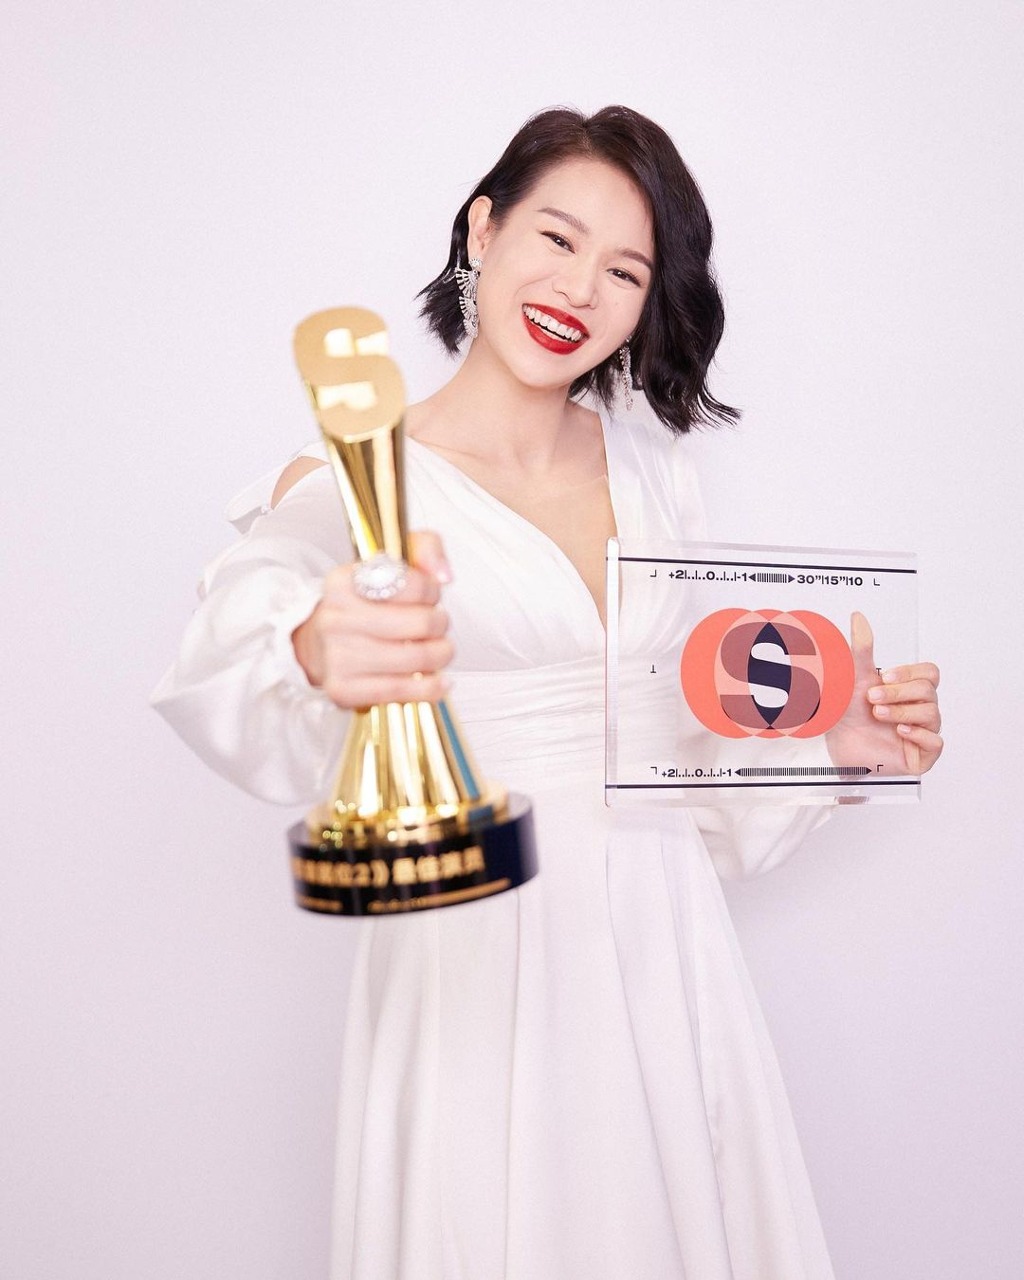 雖然肥田未能為胡杏兒奪得香港的獎項，不過胡杏兒在2011年憑劇集《萬鳳之王》封視后。其演技實力近年曾已受到國內認可。